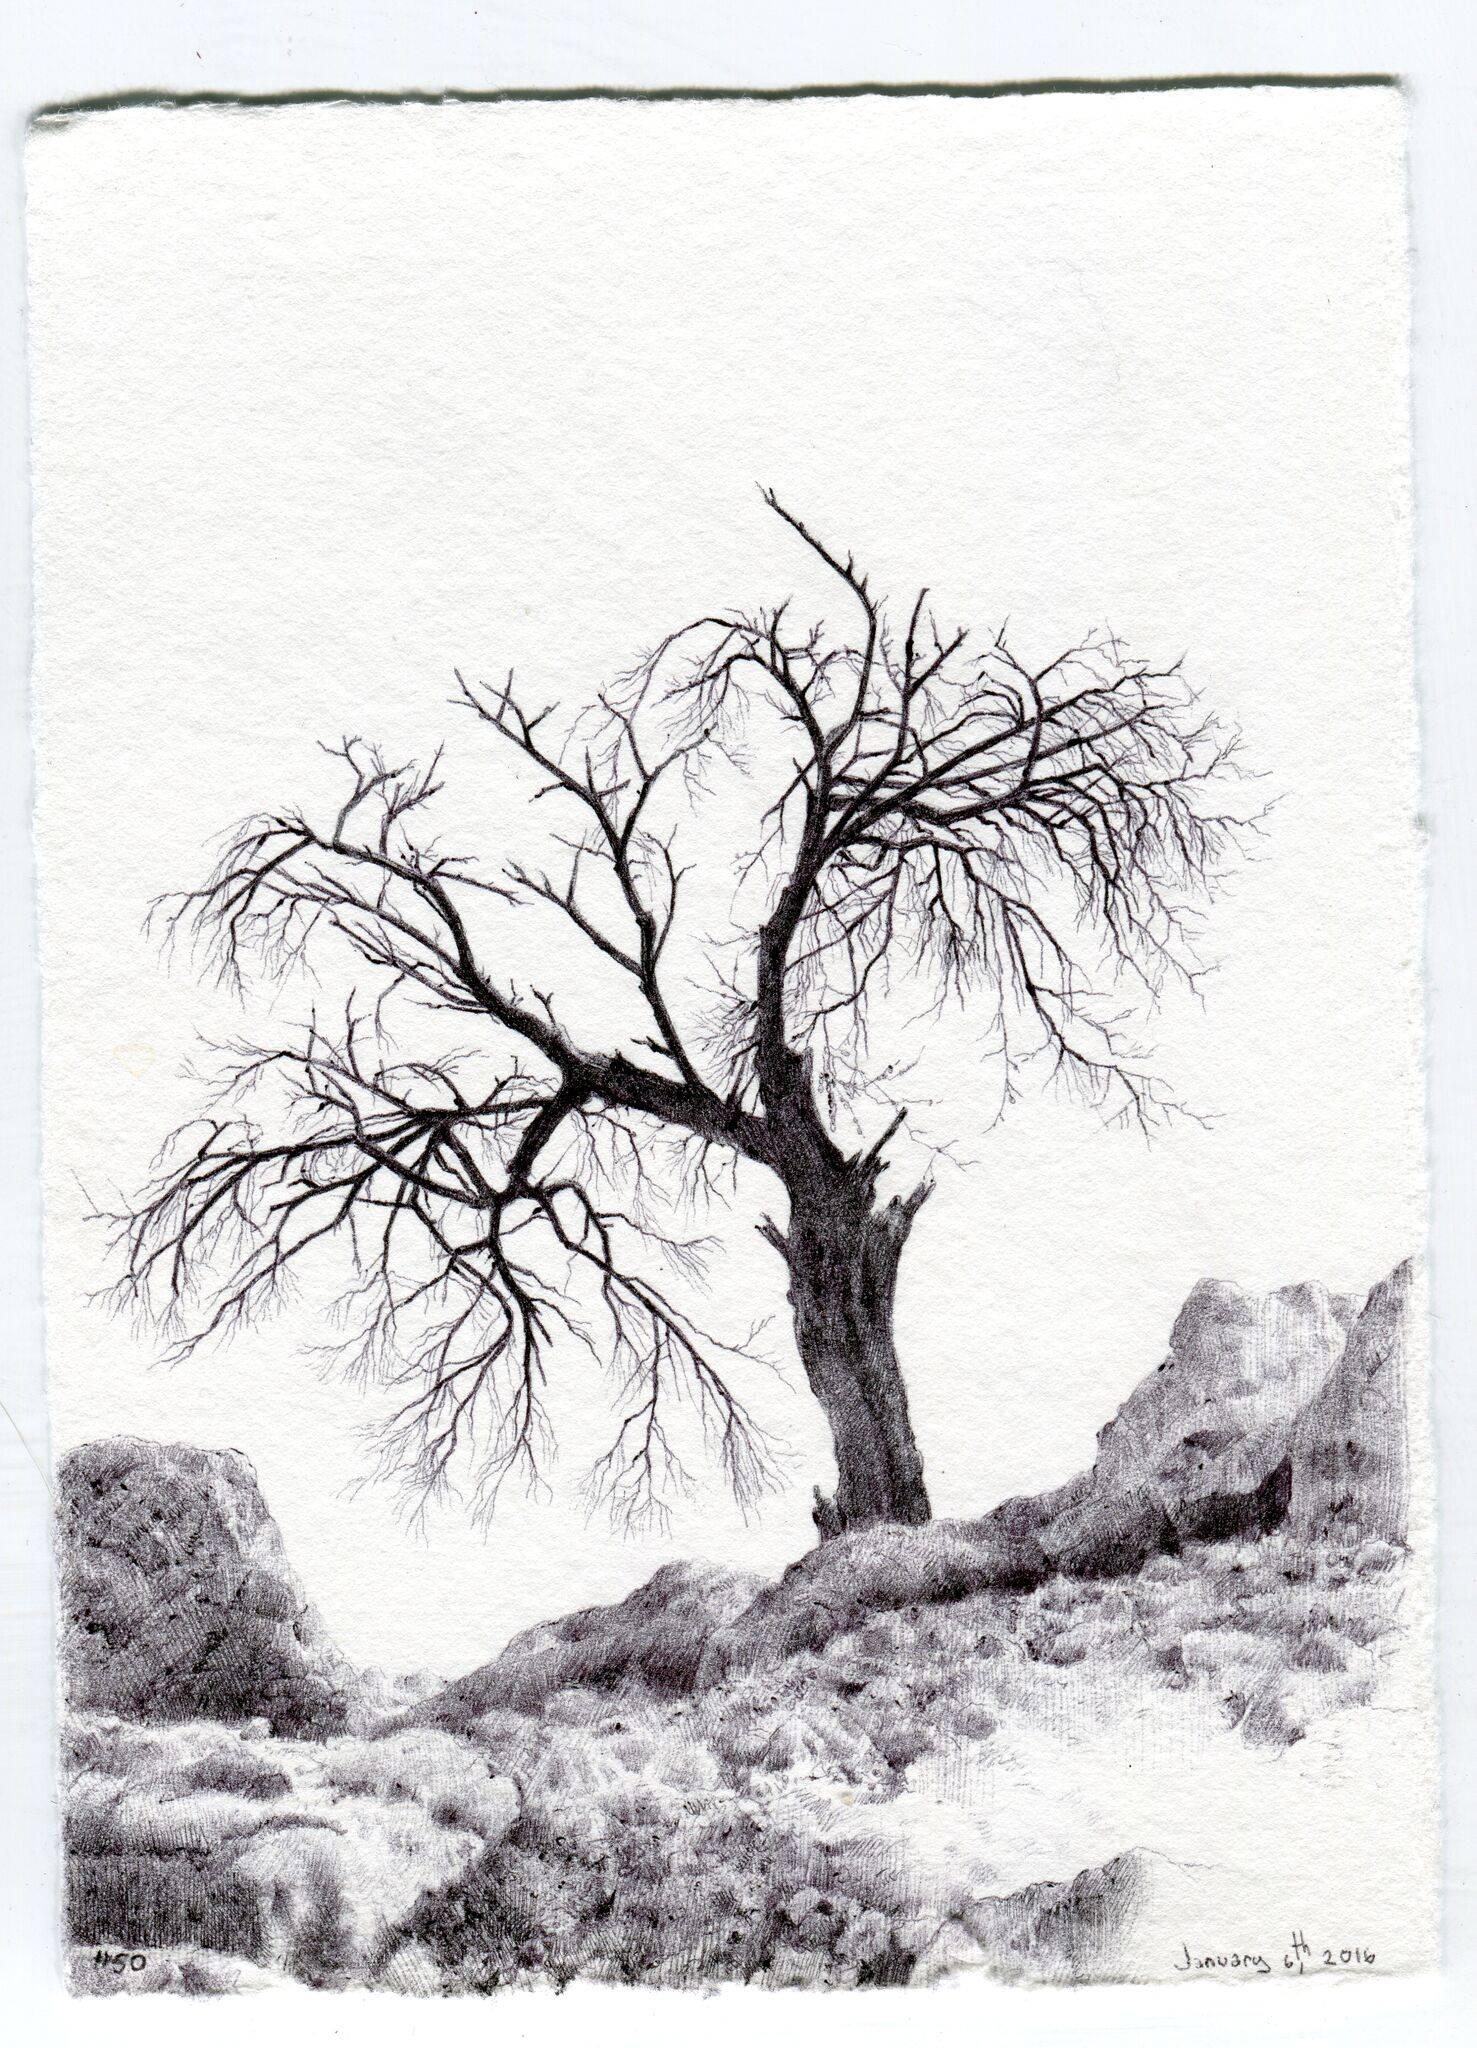 Landscape Art Dina Brodsky - Tree n° 50, 15 mars 2016, dessin de paysage contemporain au crayon sur papier